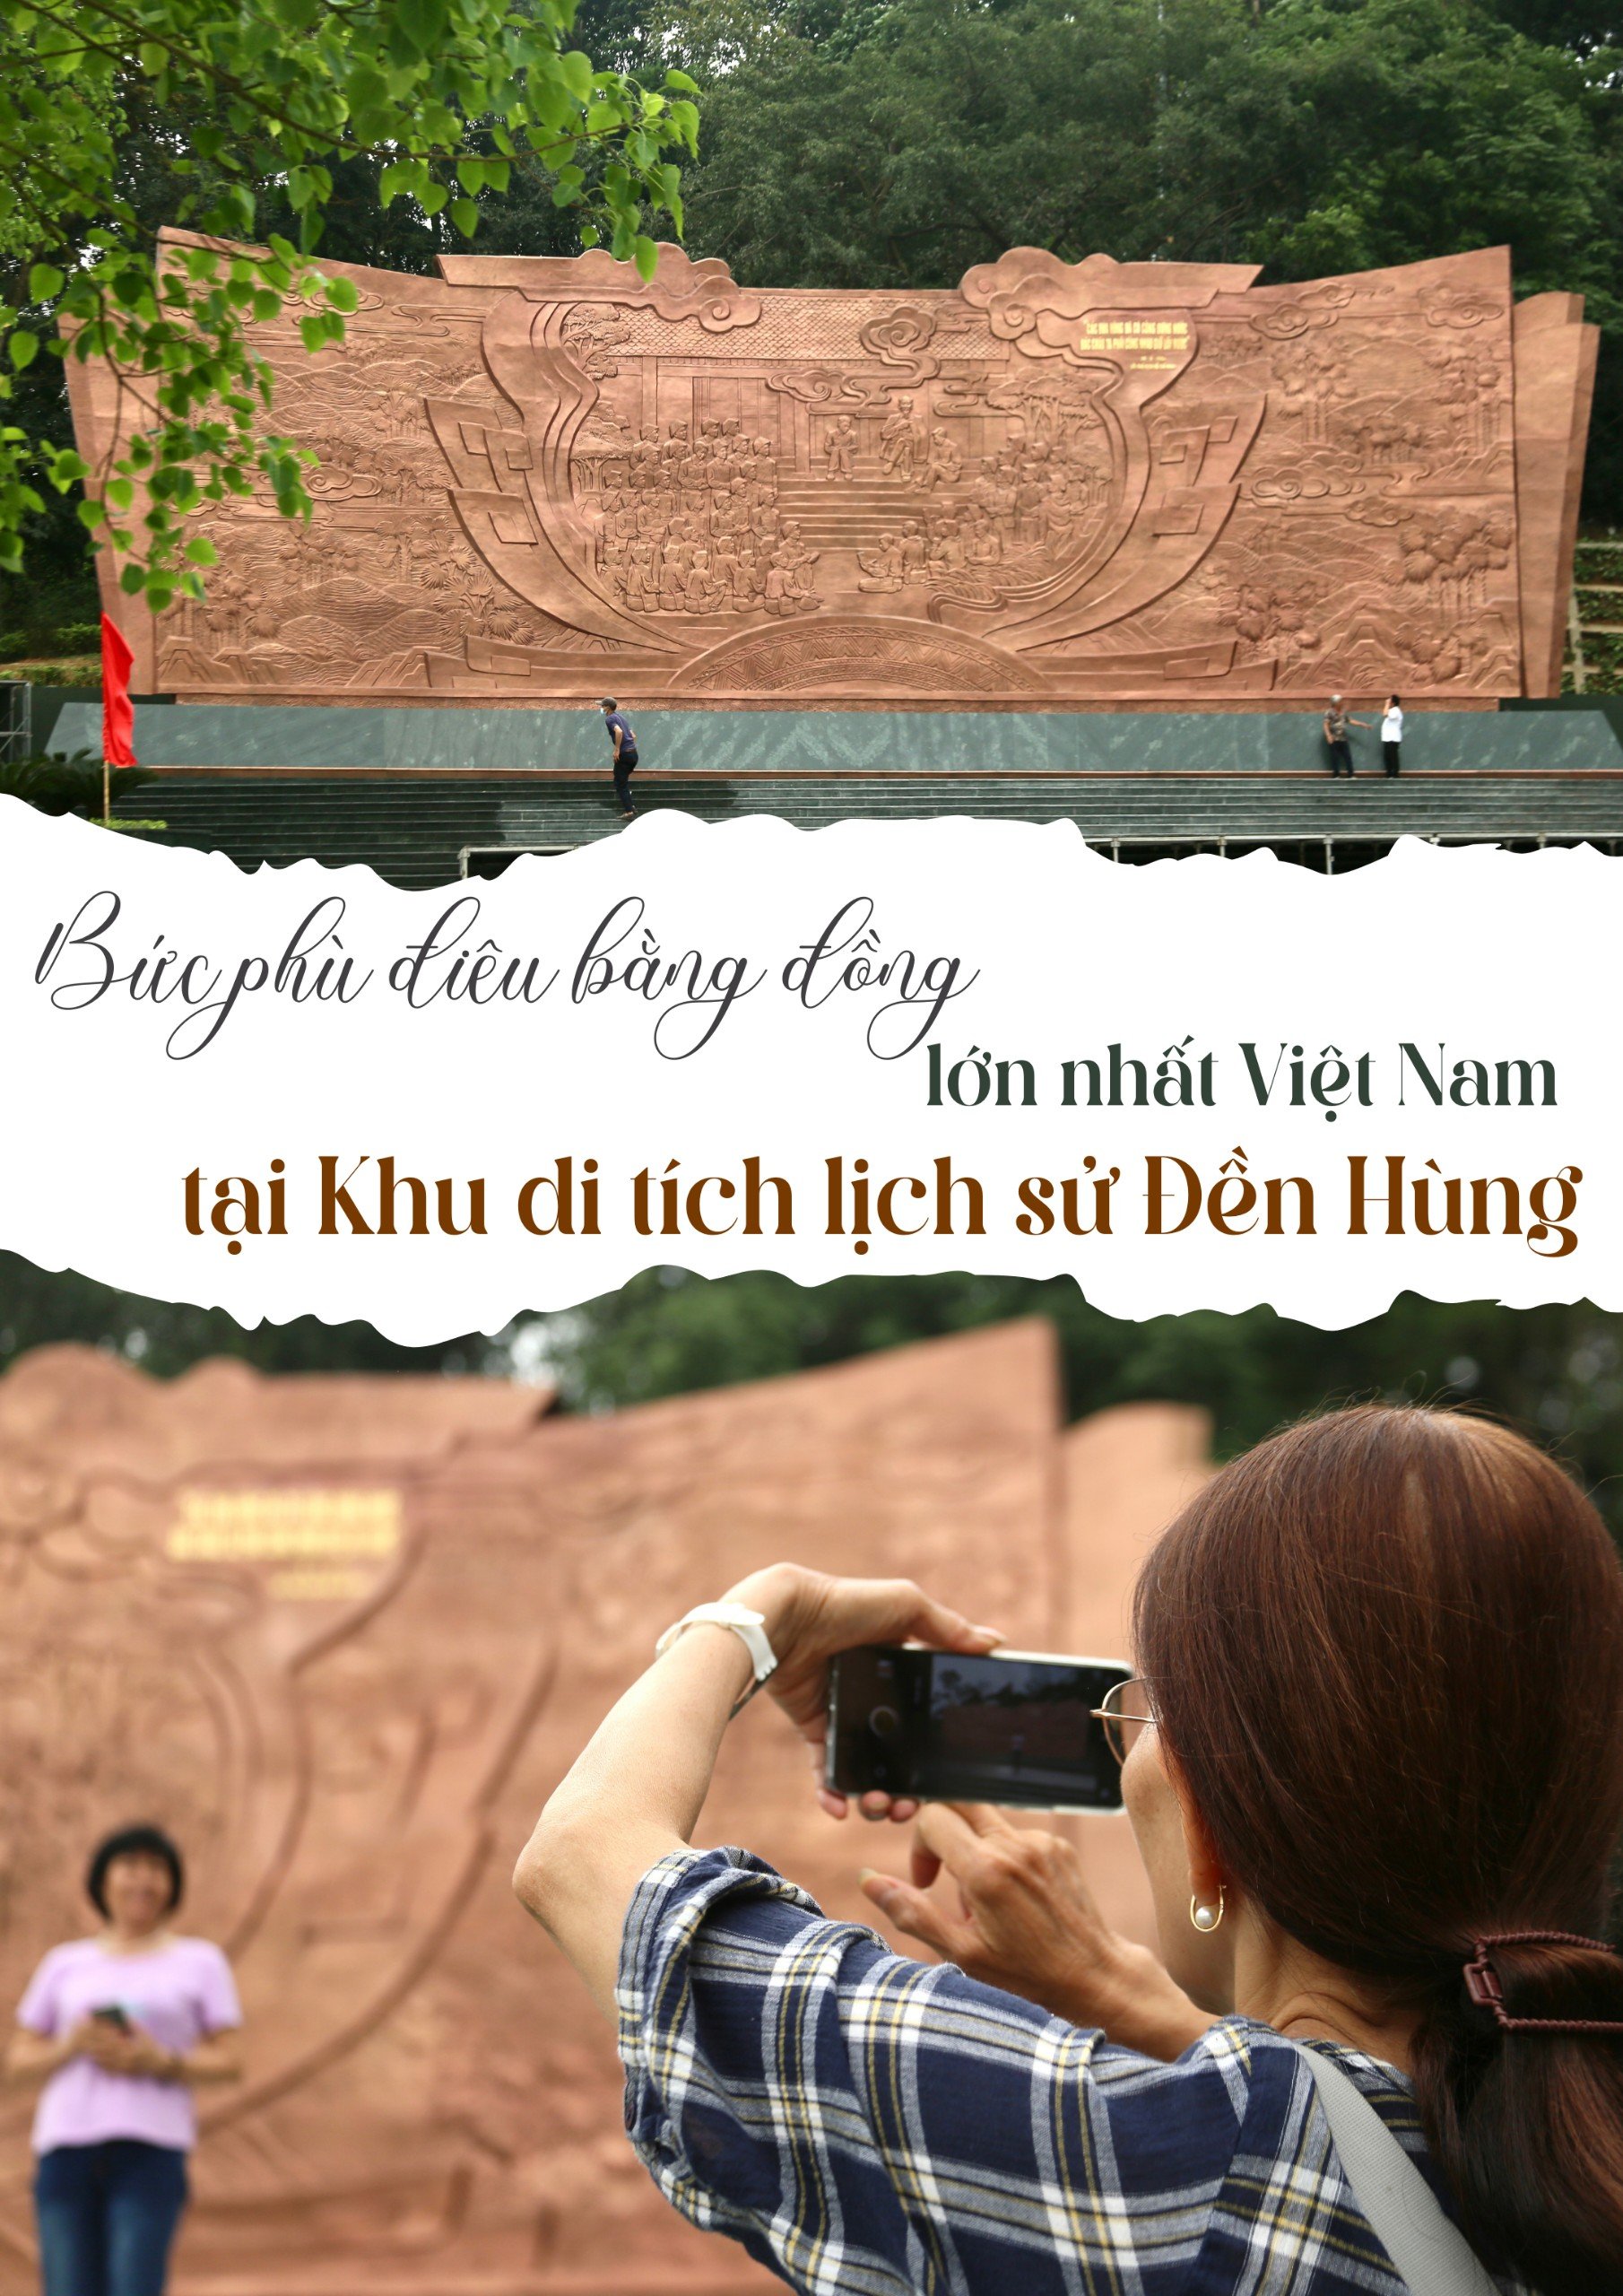 Bức Phù điêu bằng đồng lớn nhất Việt Nam tại Khu di tích lịch sử Đền Hùng